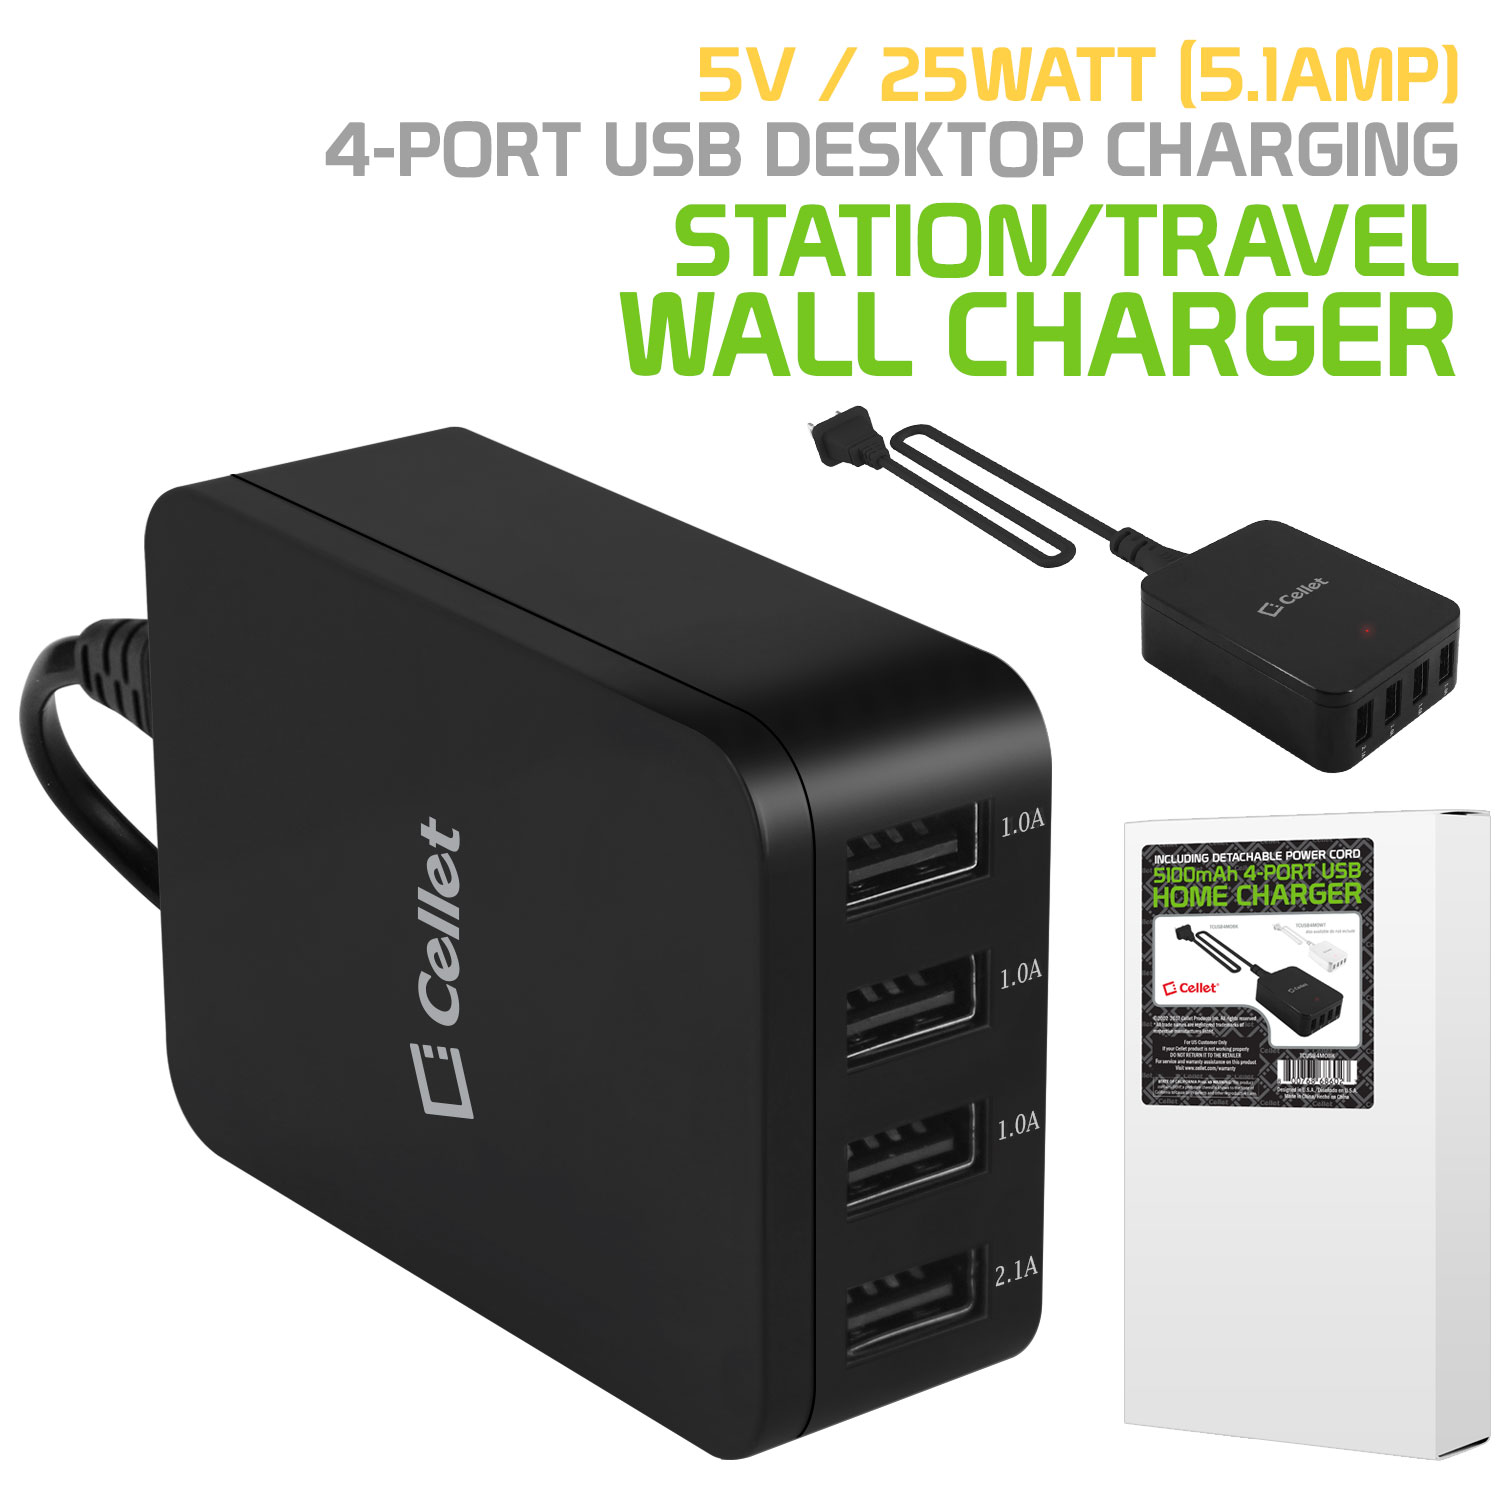 Cellet 5V / 25Watt (5.1Amp) 4Port USB Desktop Charging Station/Travel Wall Charger Black - image 1 of 9